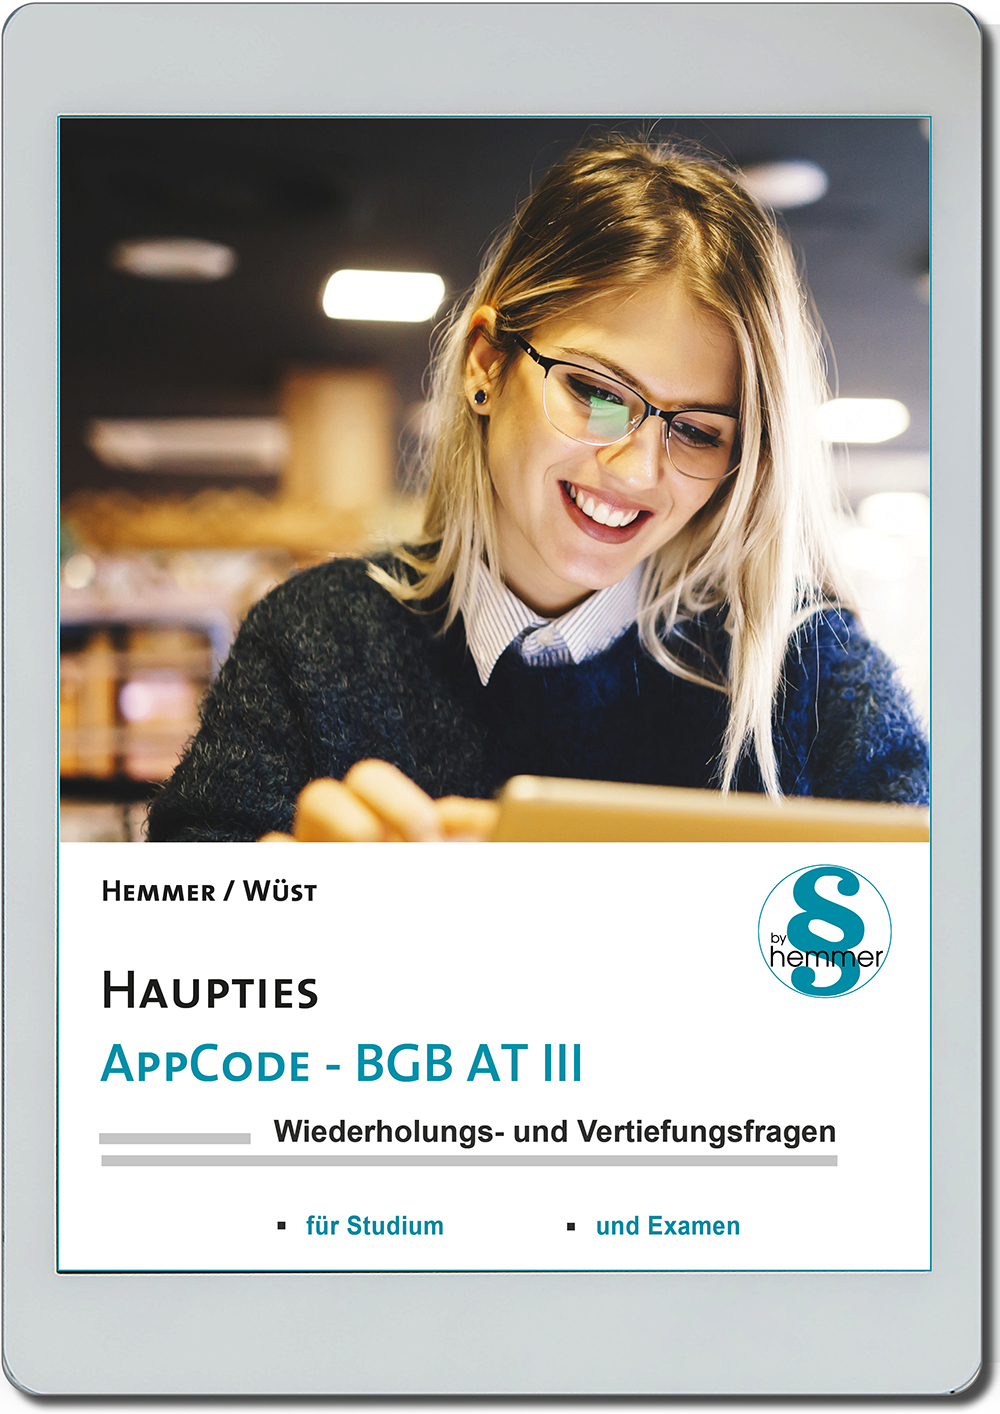 AppCode - haupties - BGB AT III